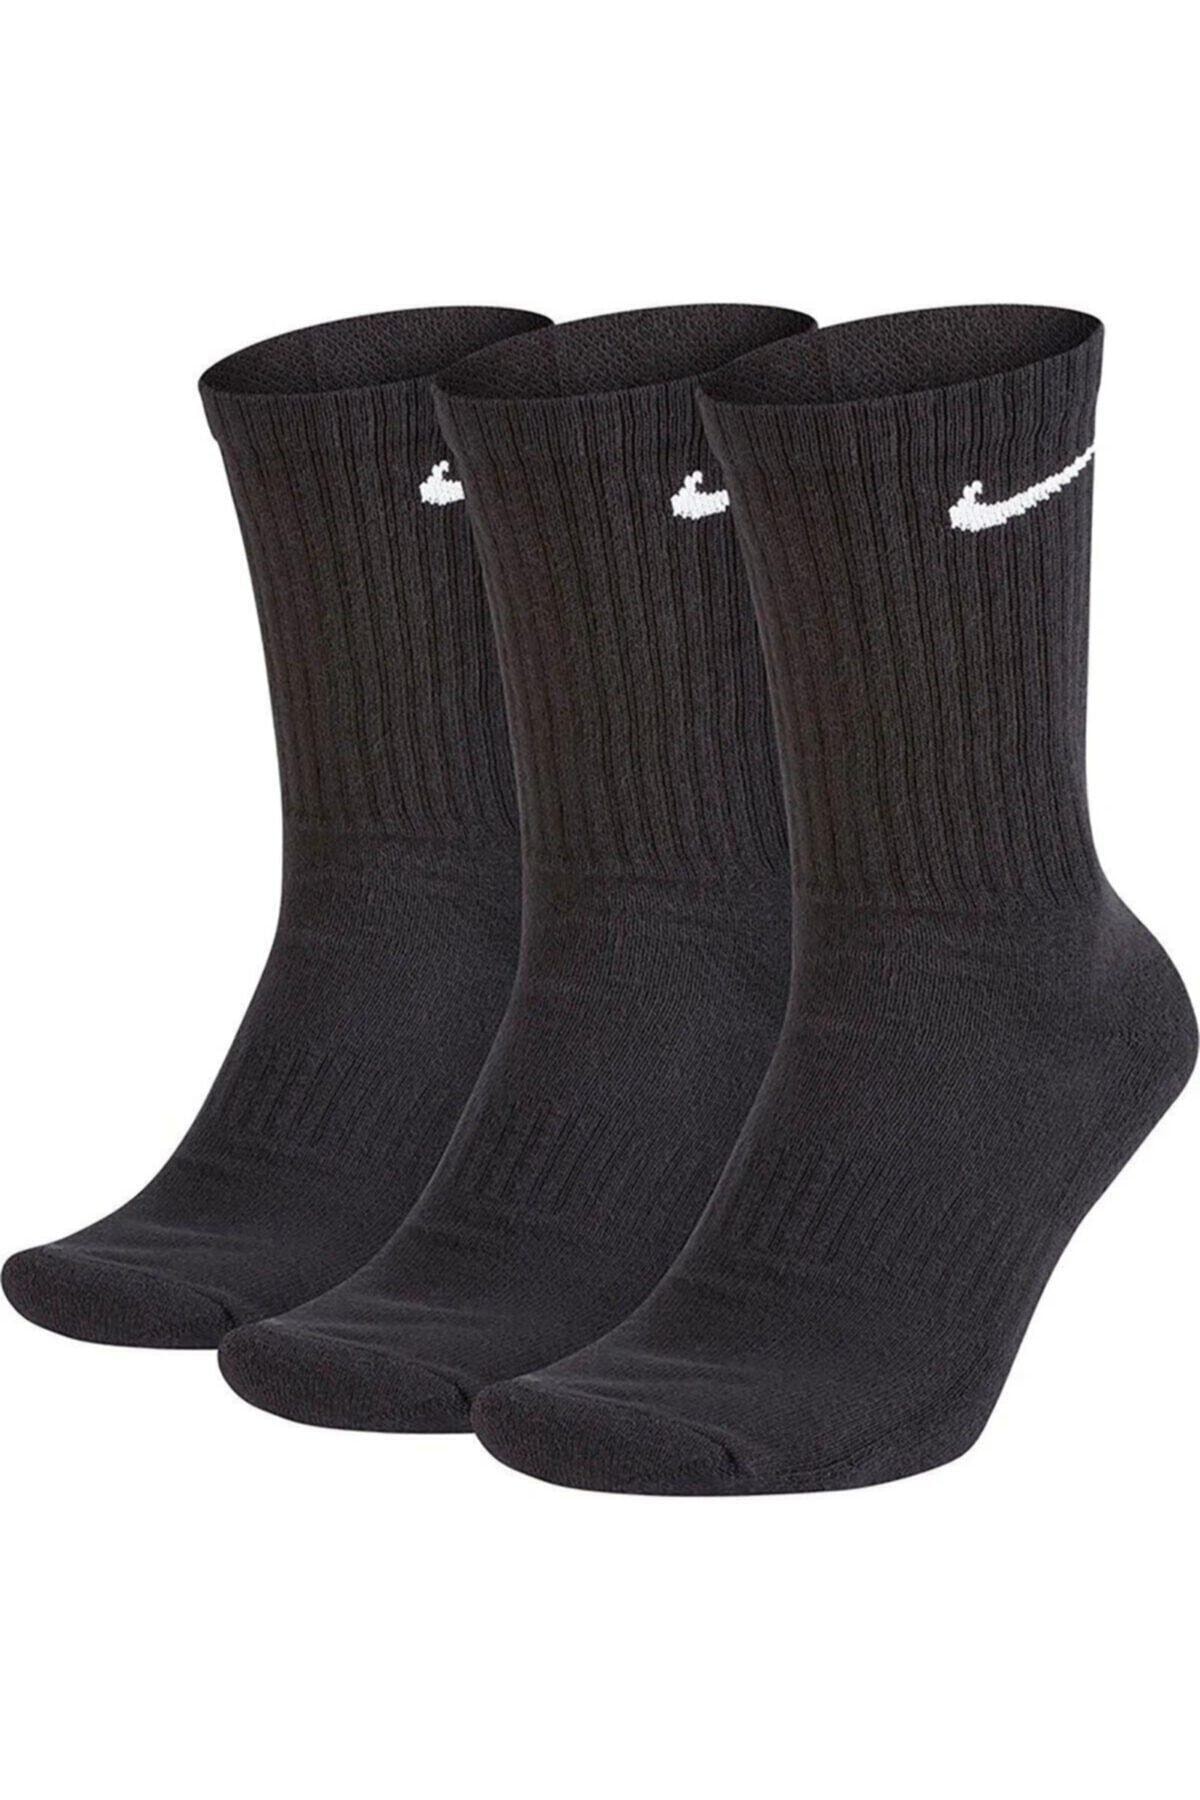 جوراب ورزشی نایک مشکی سه تایی  زنانه  Nike